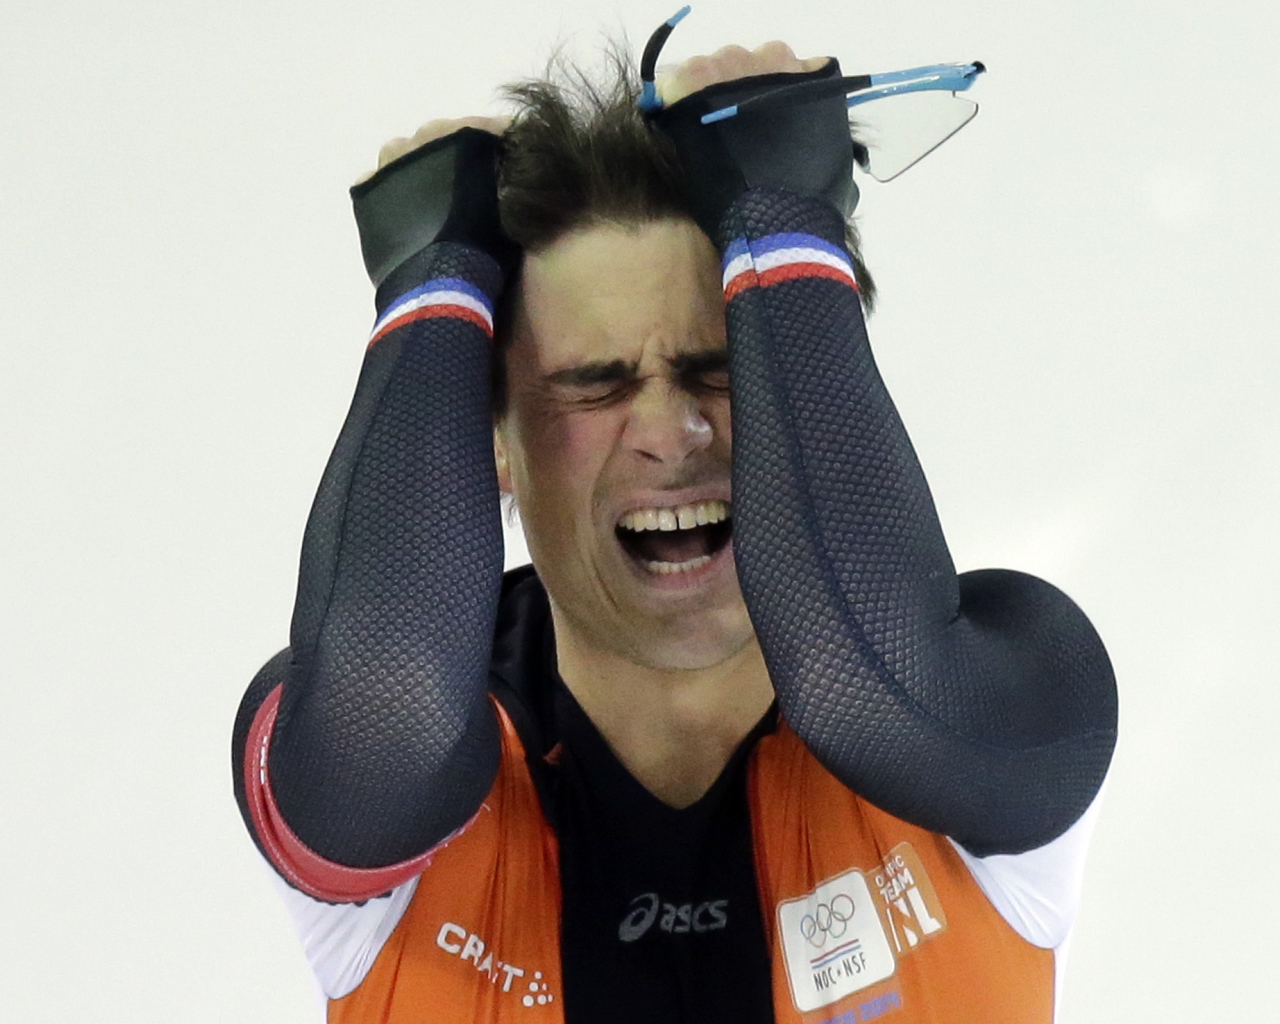 Обладатель серебряной медали в дисциплине скоростной бег на коньках Ян Смеекенс на олимпиаде в Сочи